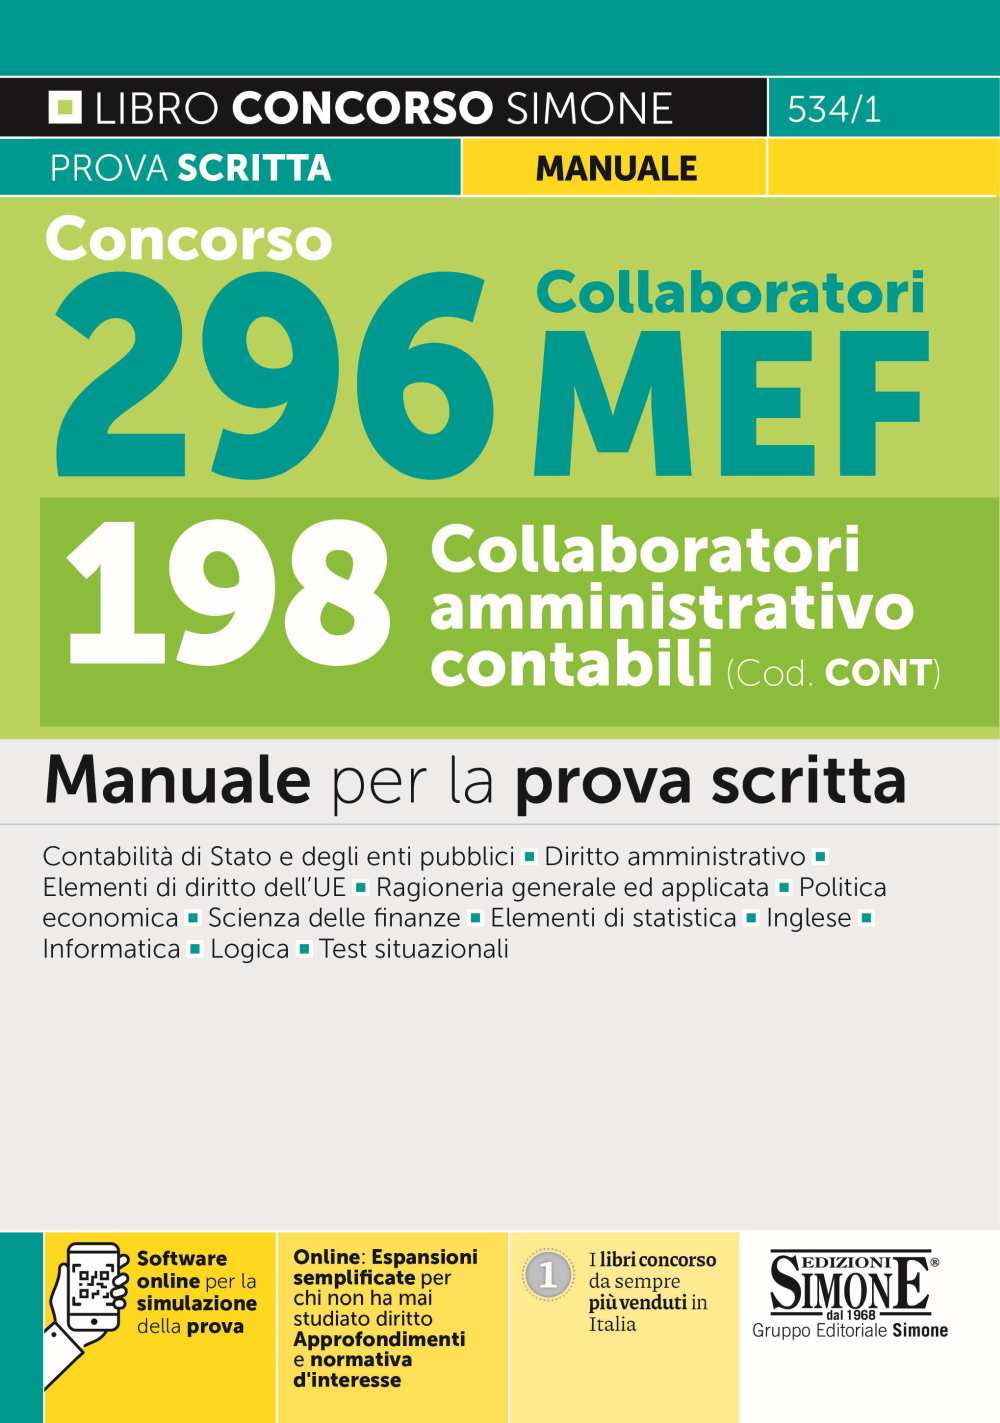 Concorso 296 Collaboratori MEF - 198 Collaboratori amministrativo contabili (Cod. CONT) - Manuale - 534/1